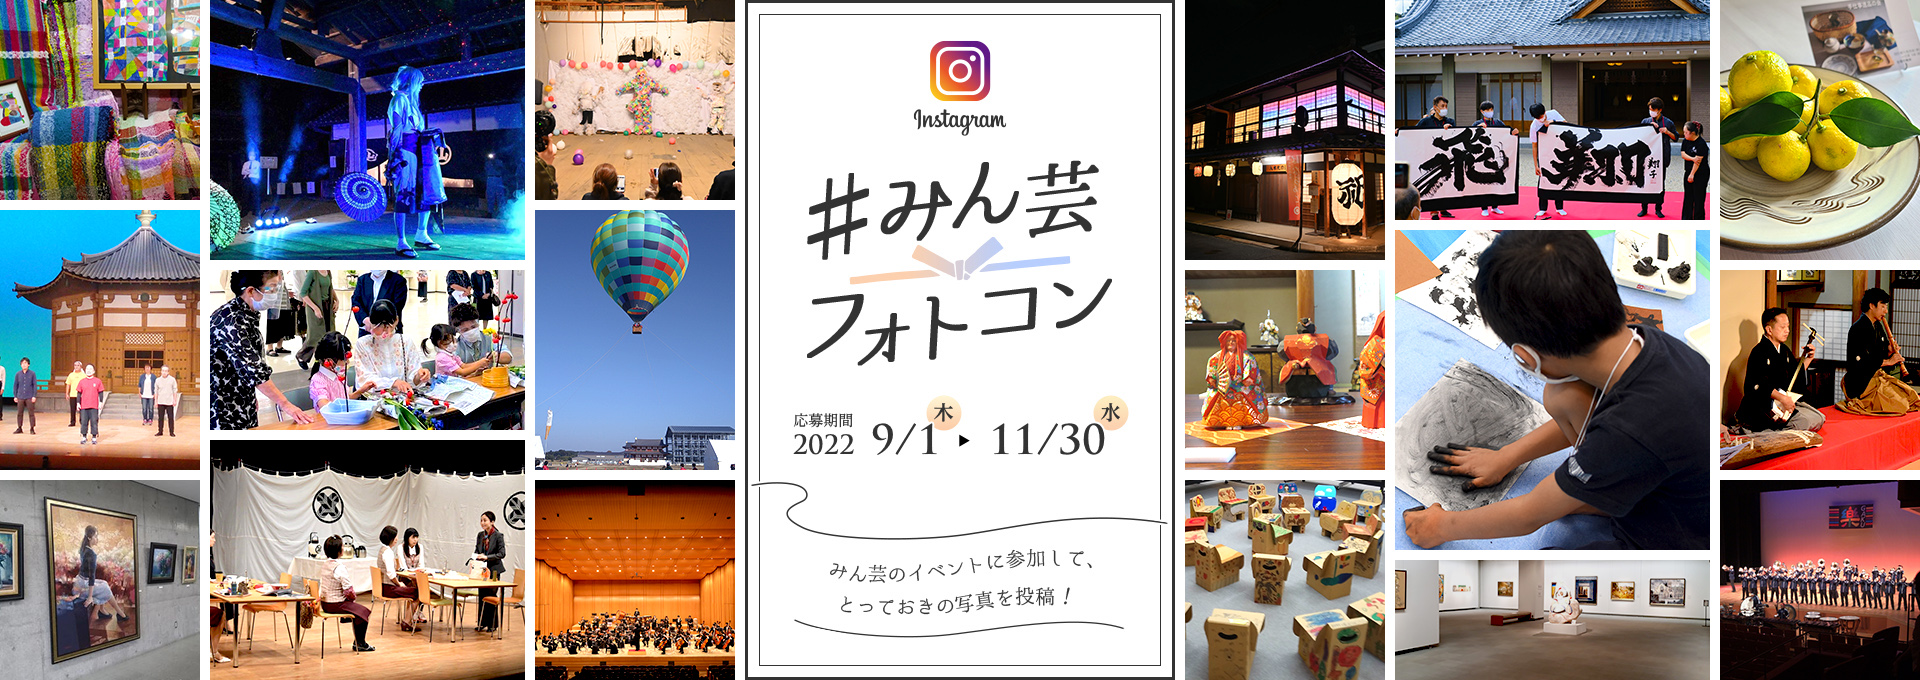 #みん芸 フォトコン 応募期間2022 9/1（木）から11/30（水） みん芸のイベントに参加して、とっておきの写真を投稿！